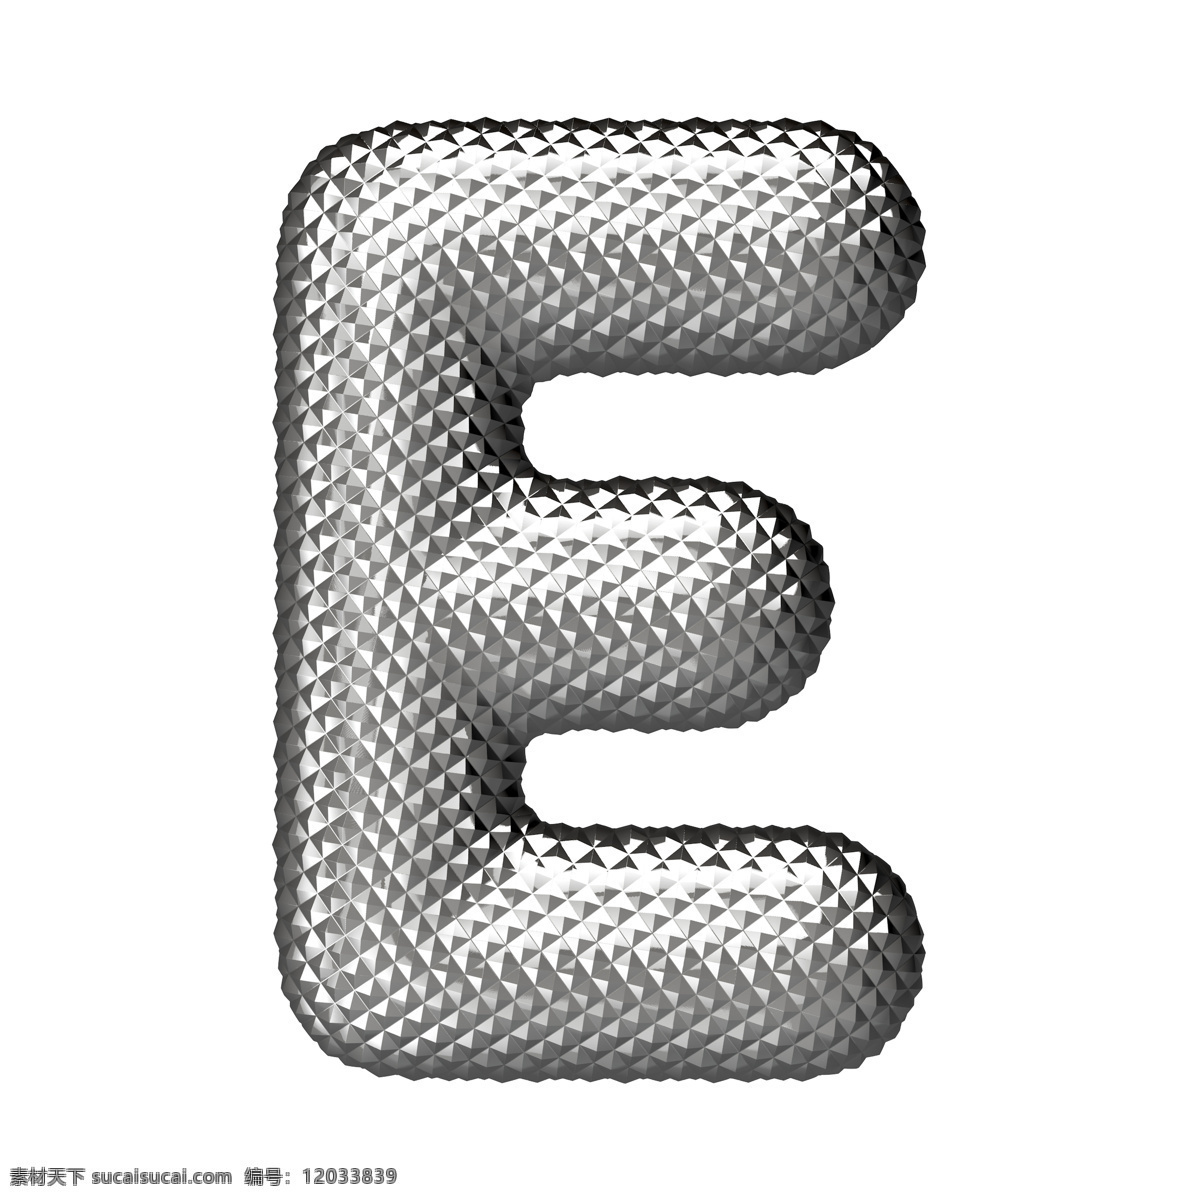 立体 银色 字母 e 立体字母 银色字母 字体设计 书画文字 文化艺术